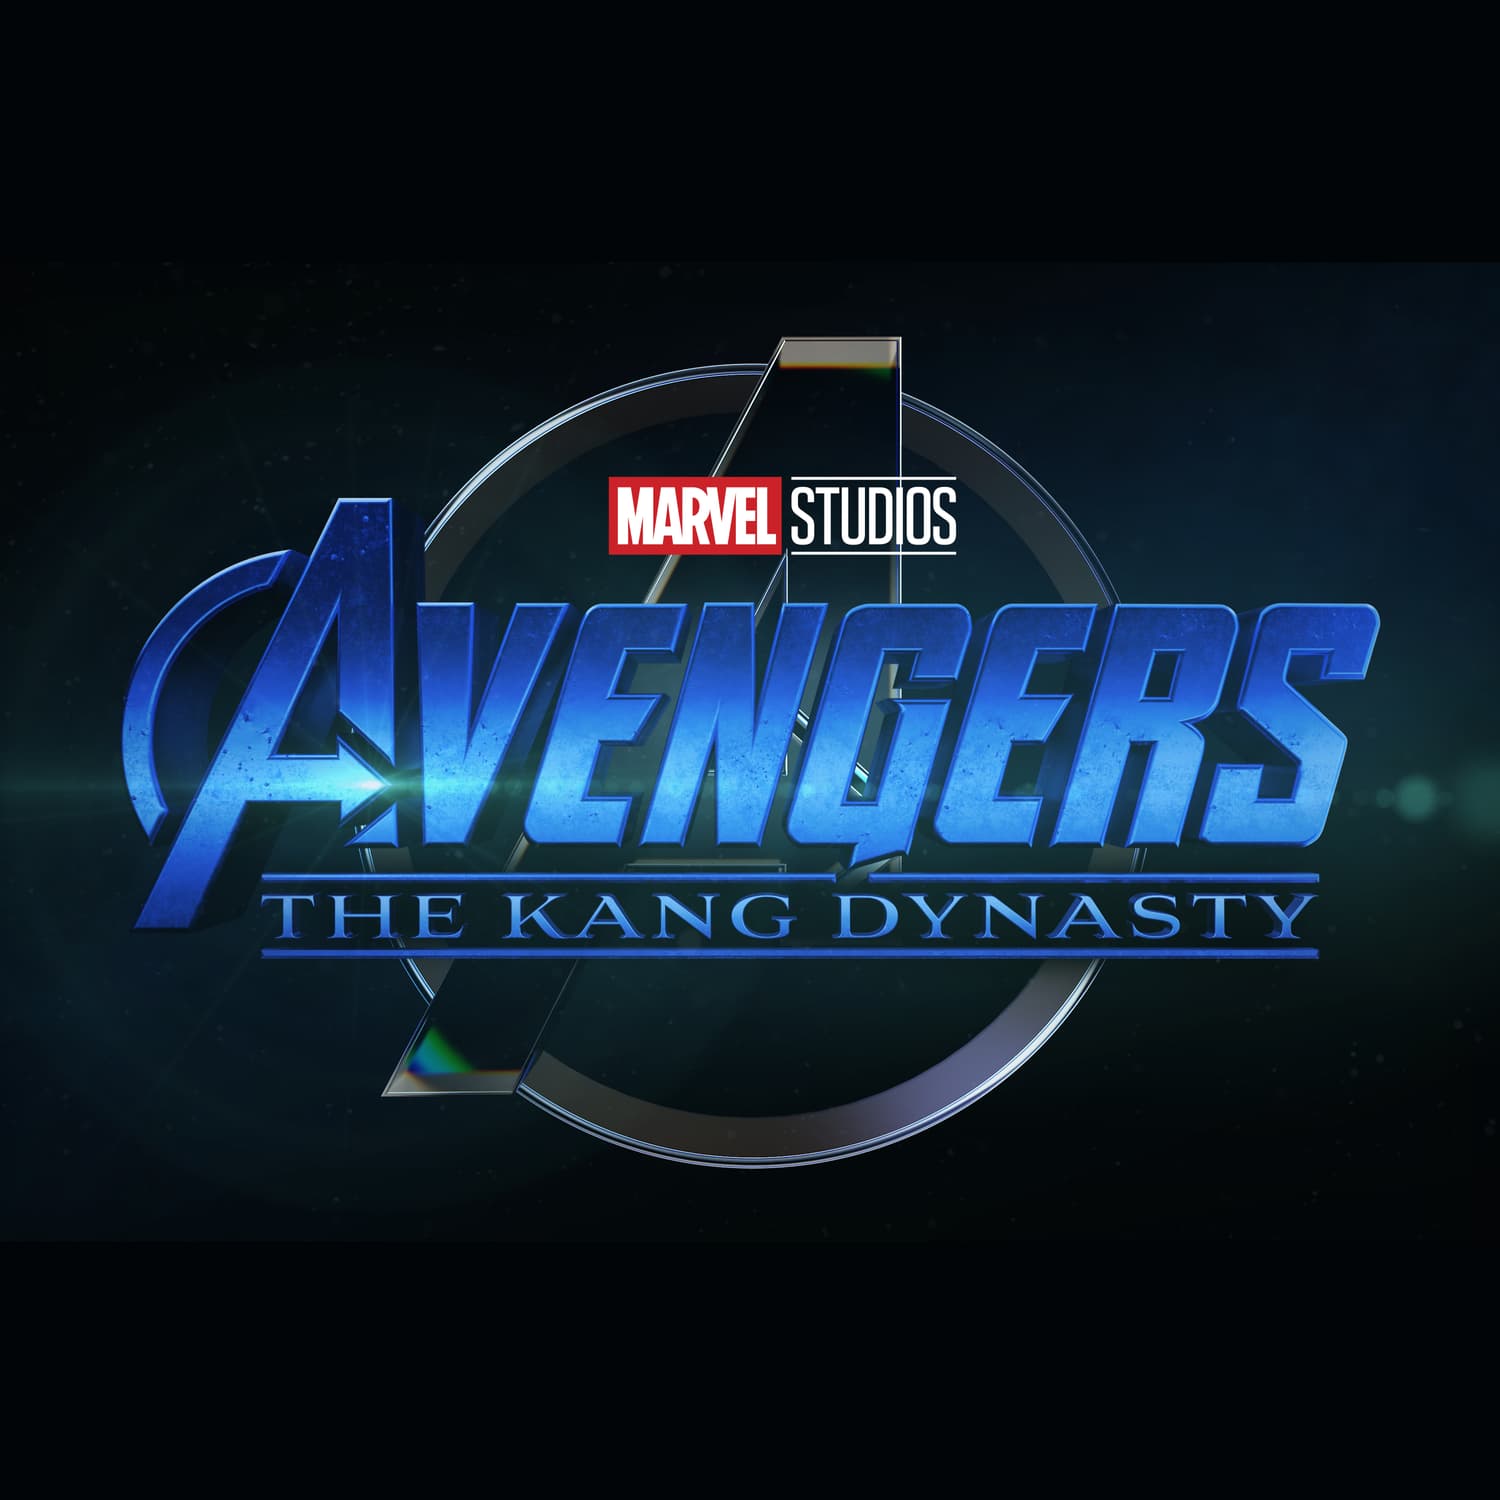 Marvel Studios' Avengers: the Kang Dynasty